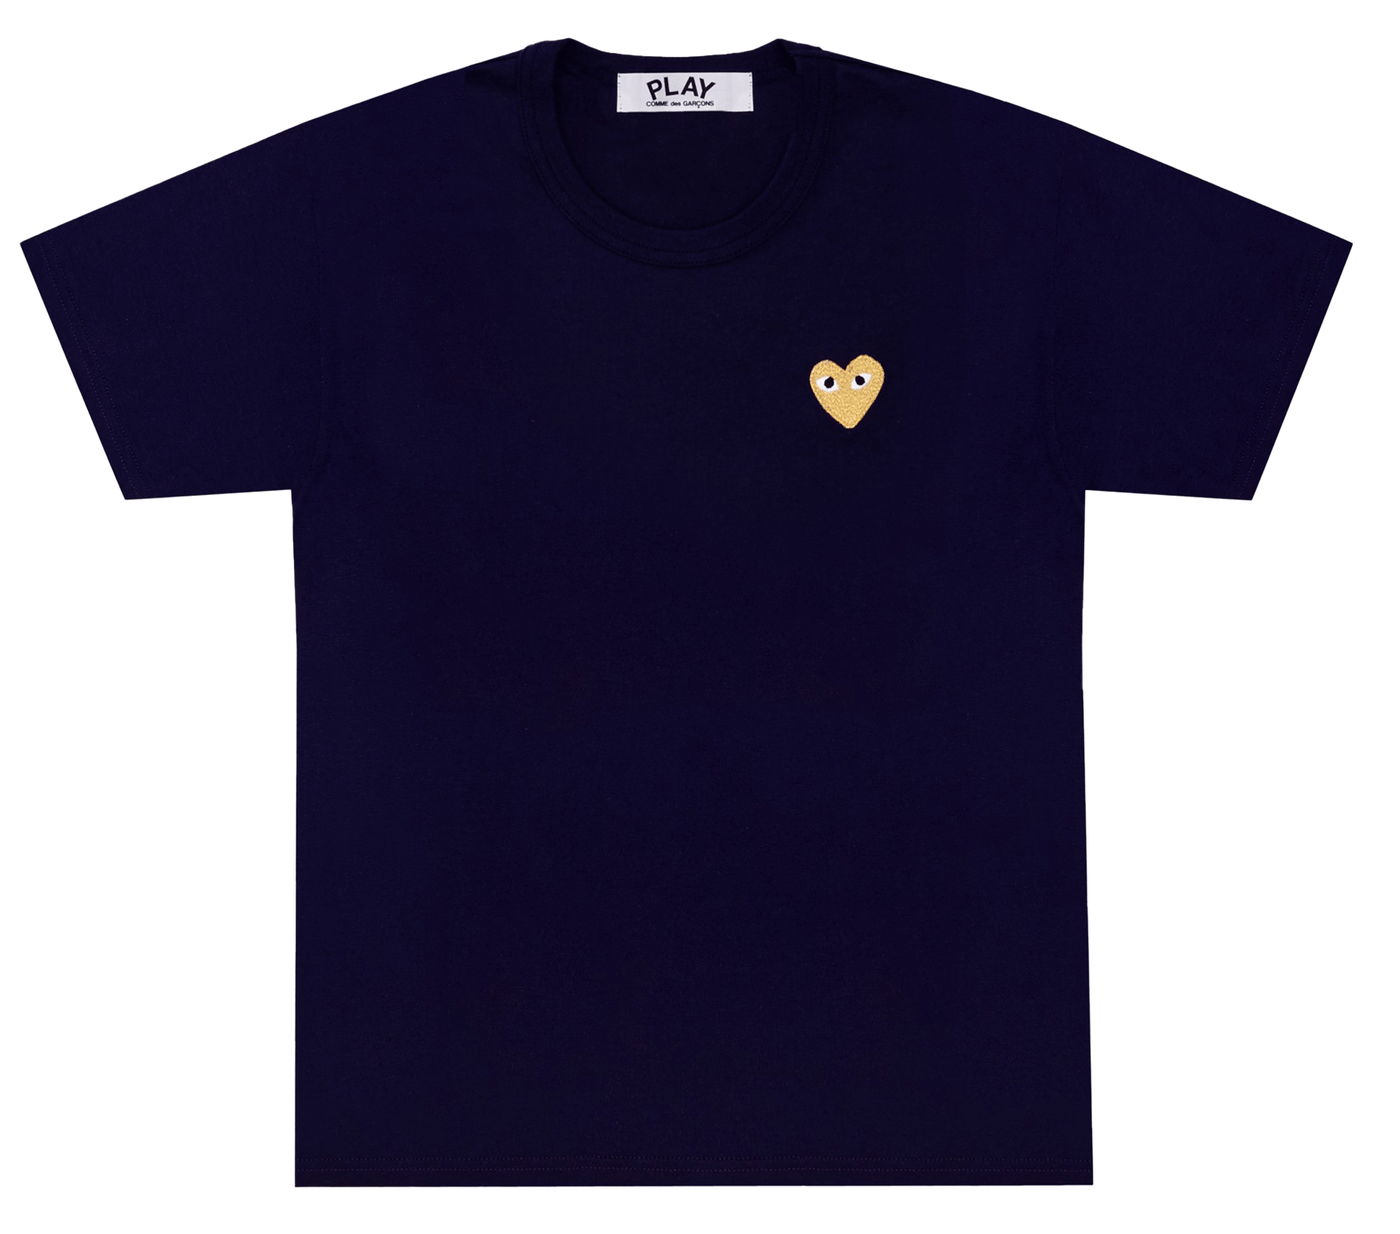     Comme-des-Garcons-Play-T-Shirt-With-Gold-Emblem-Men-Blue-1